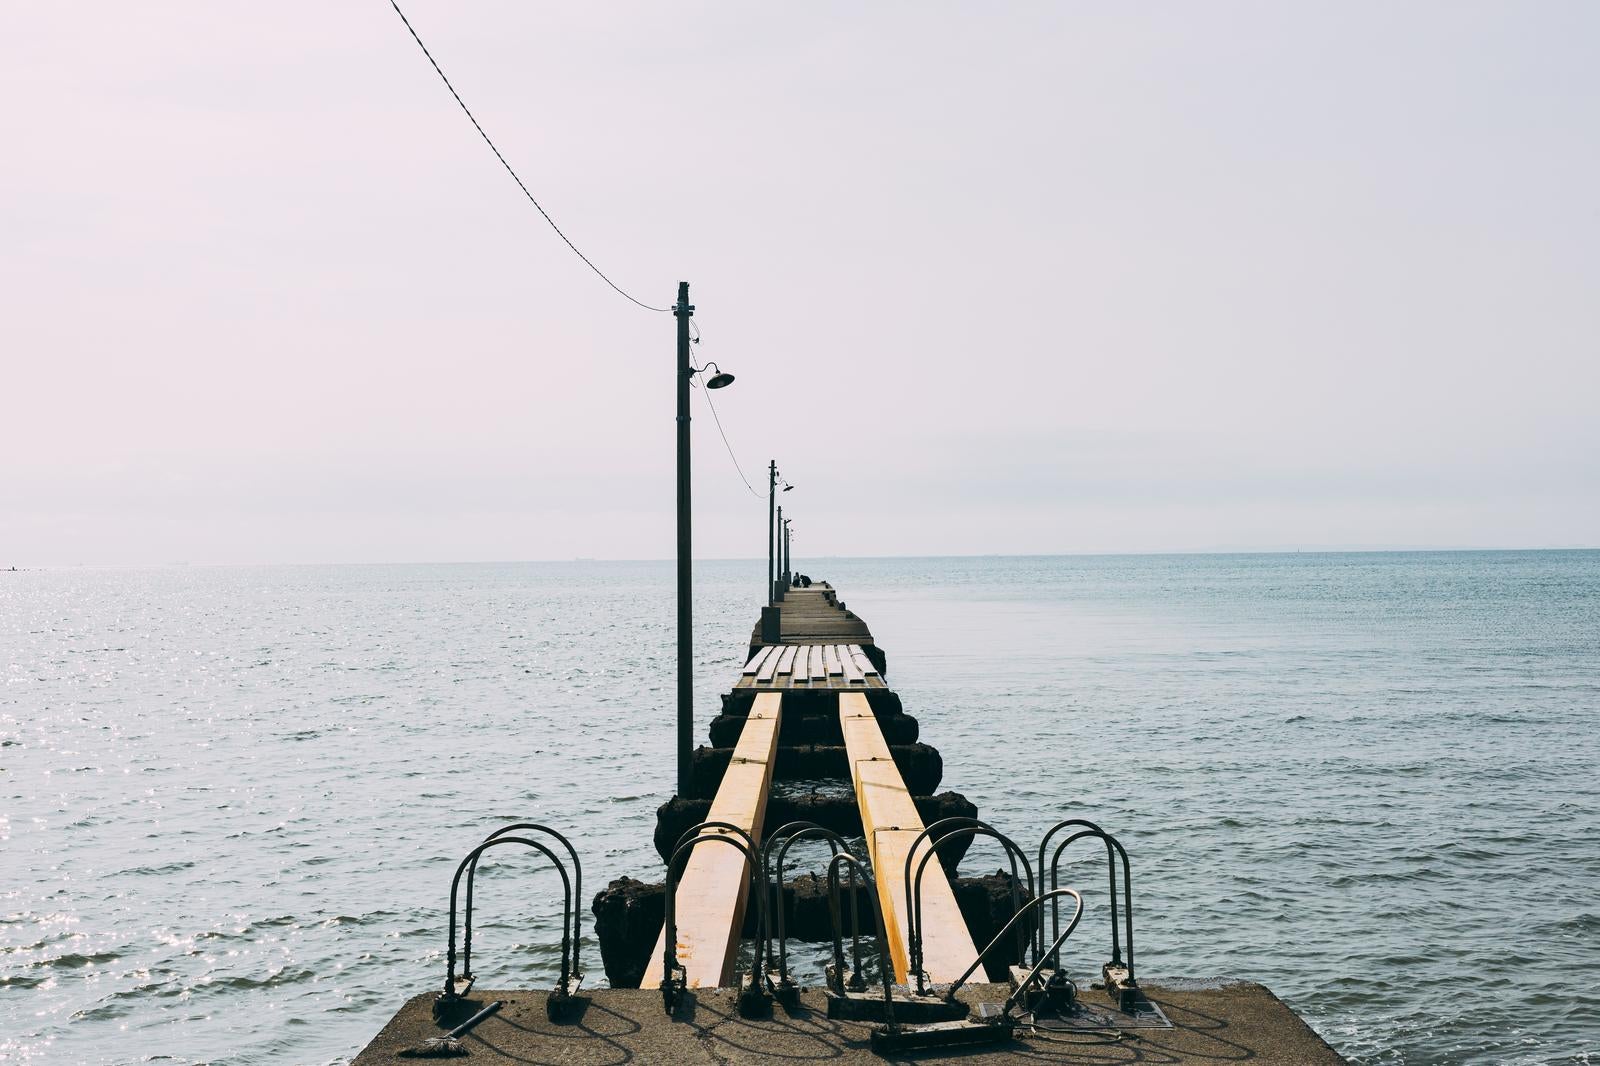 「桟橋の一部が壊れて立ち入り禁止になっている「原岡桟橋」で撮影を楽しむバカップル」の写真